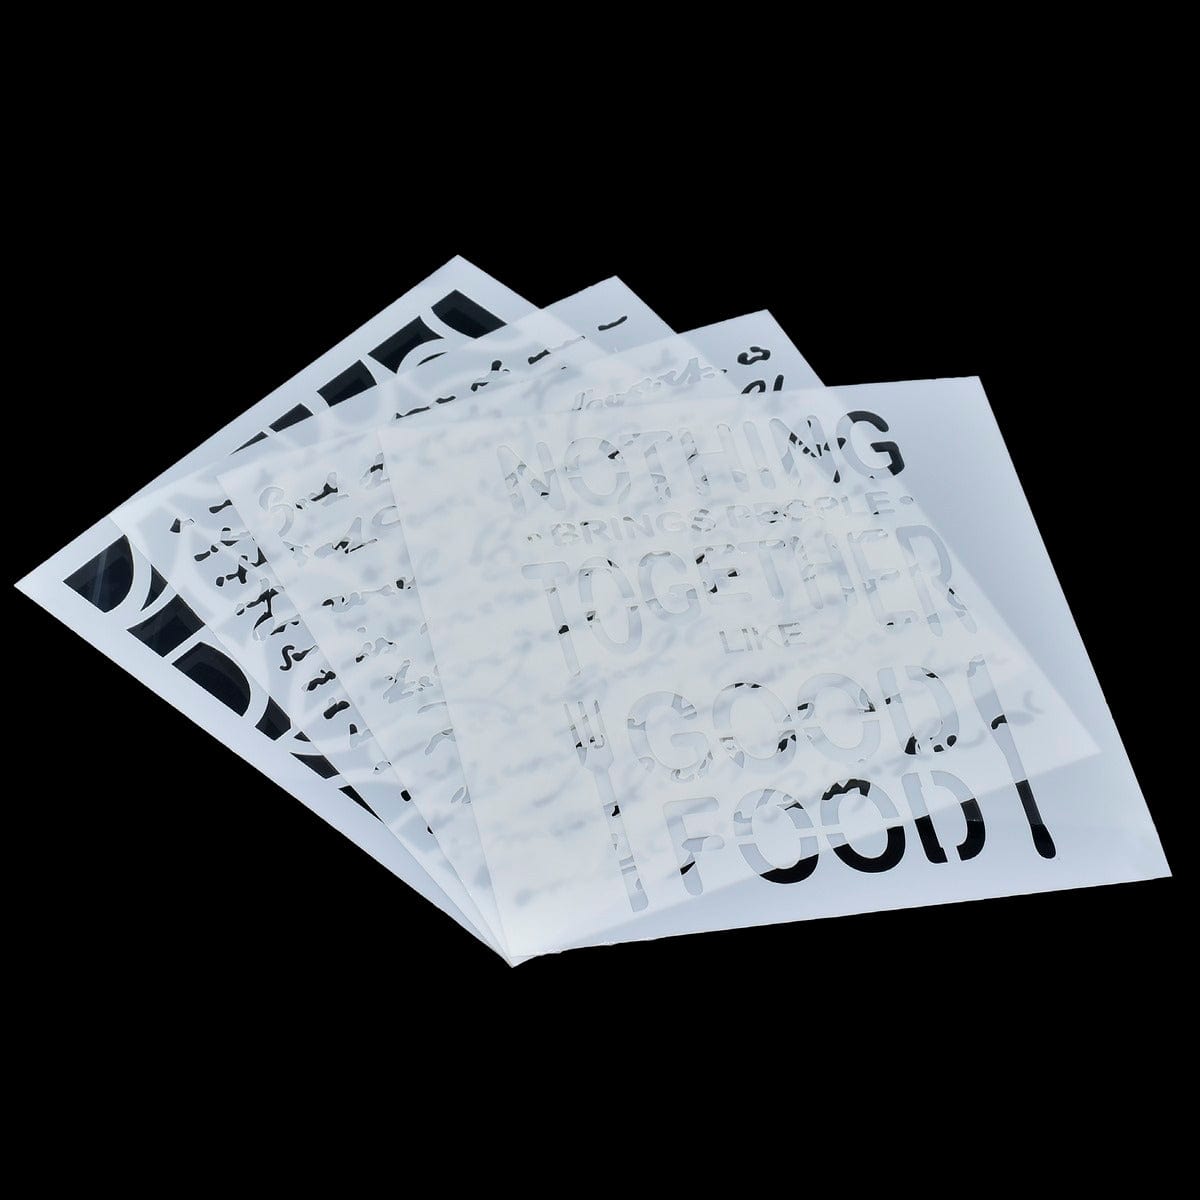 jags-mumbai Stickers Stencil Plastic 6x6 4Pcs